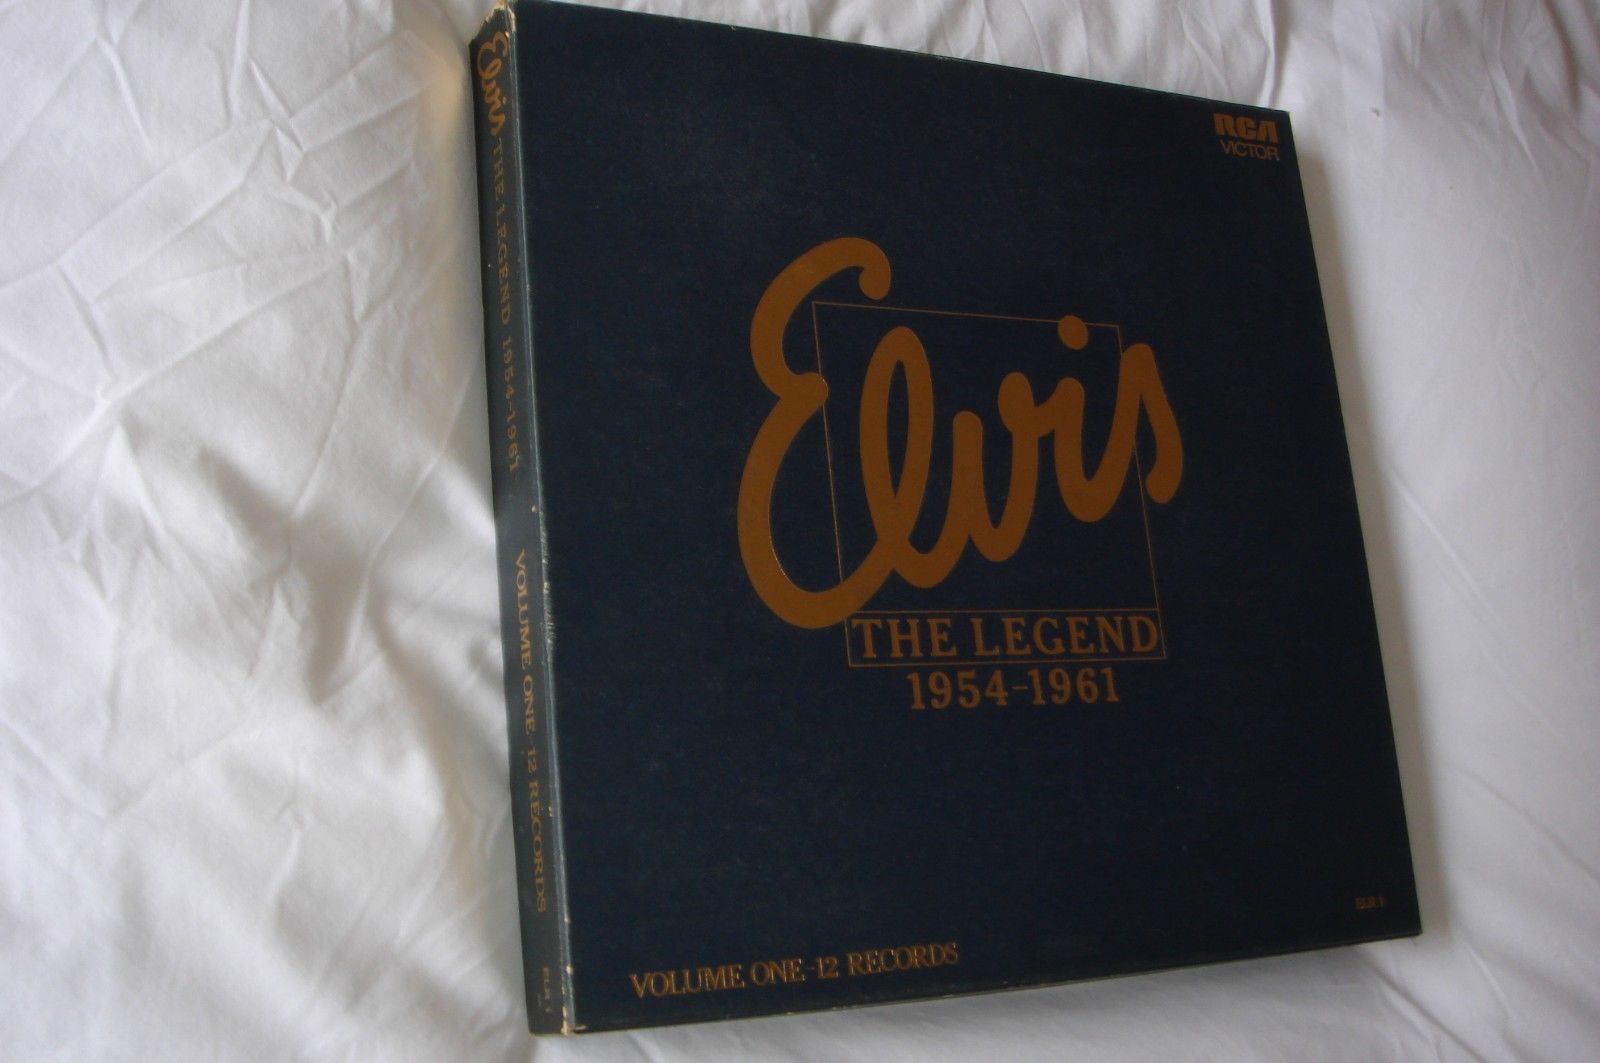 popsike.com - ELVIS PRESLEY rare 12-LP RCA box set "Elvis The Legend  1954-61", mint vinyl - auction details